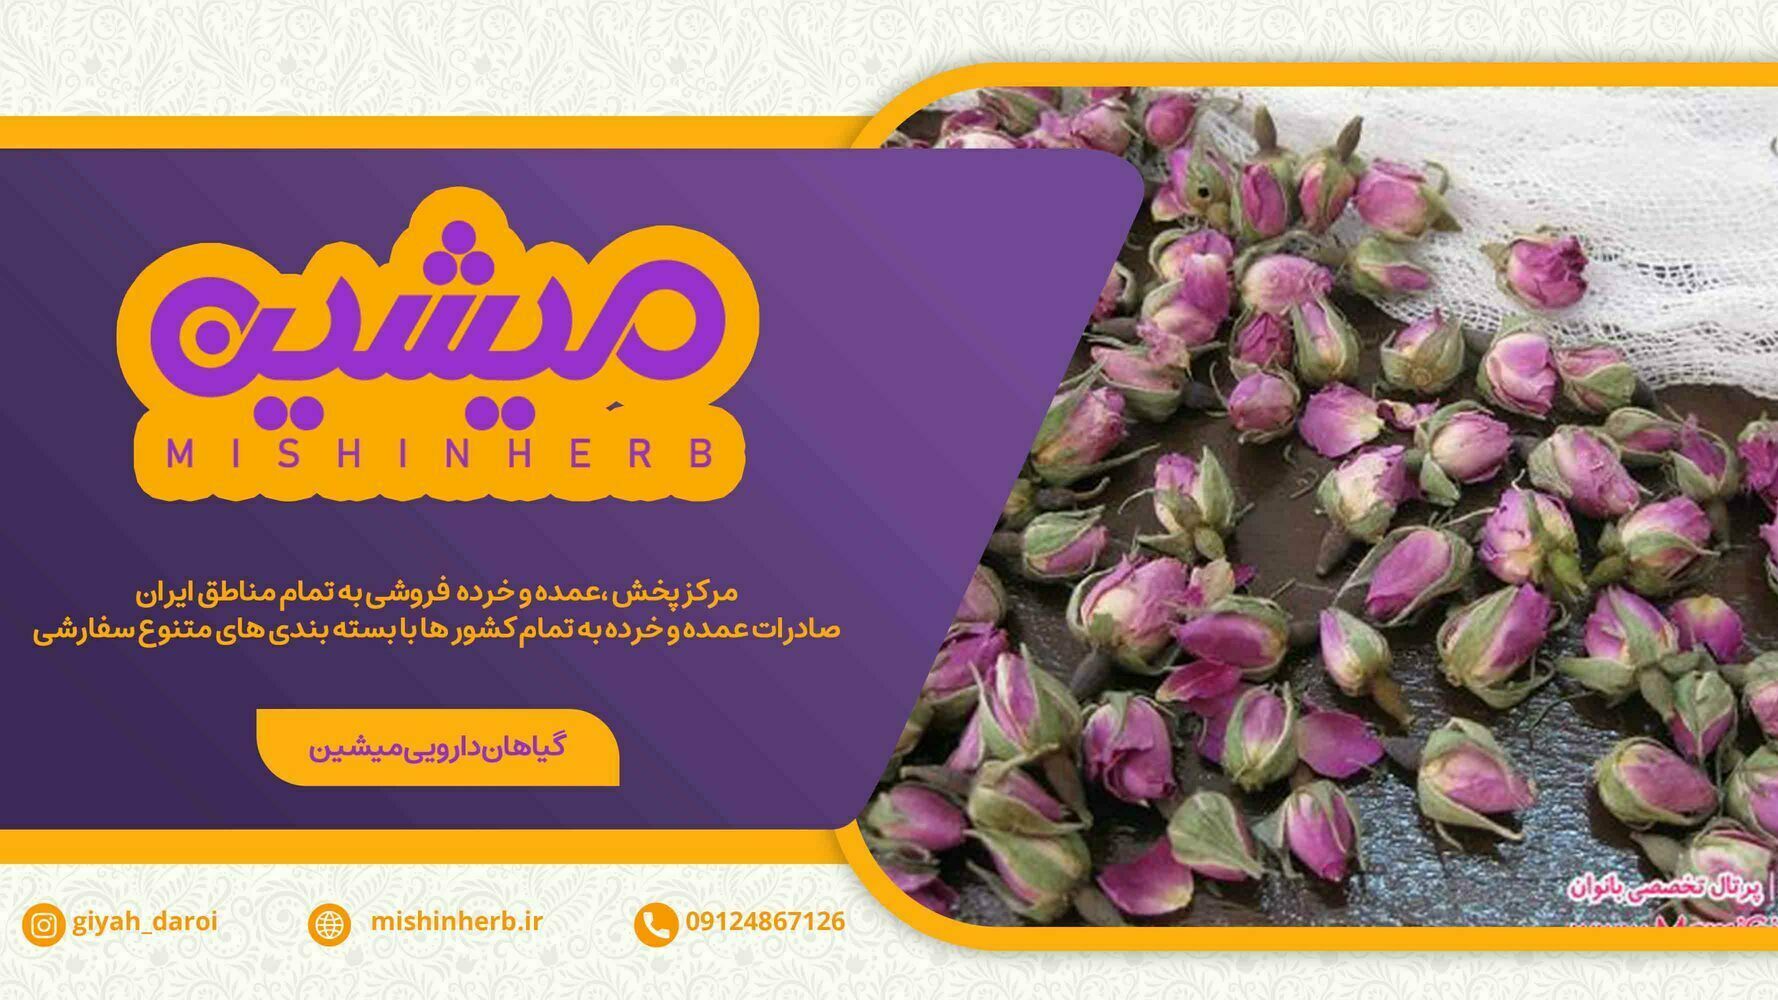 فروشنده عمده گل محمدی